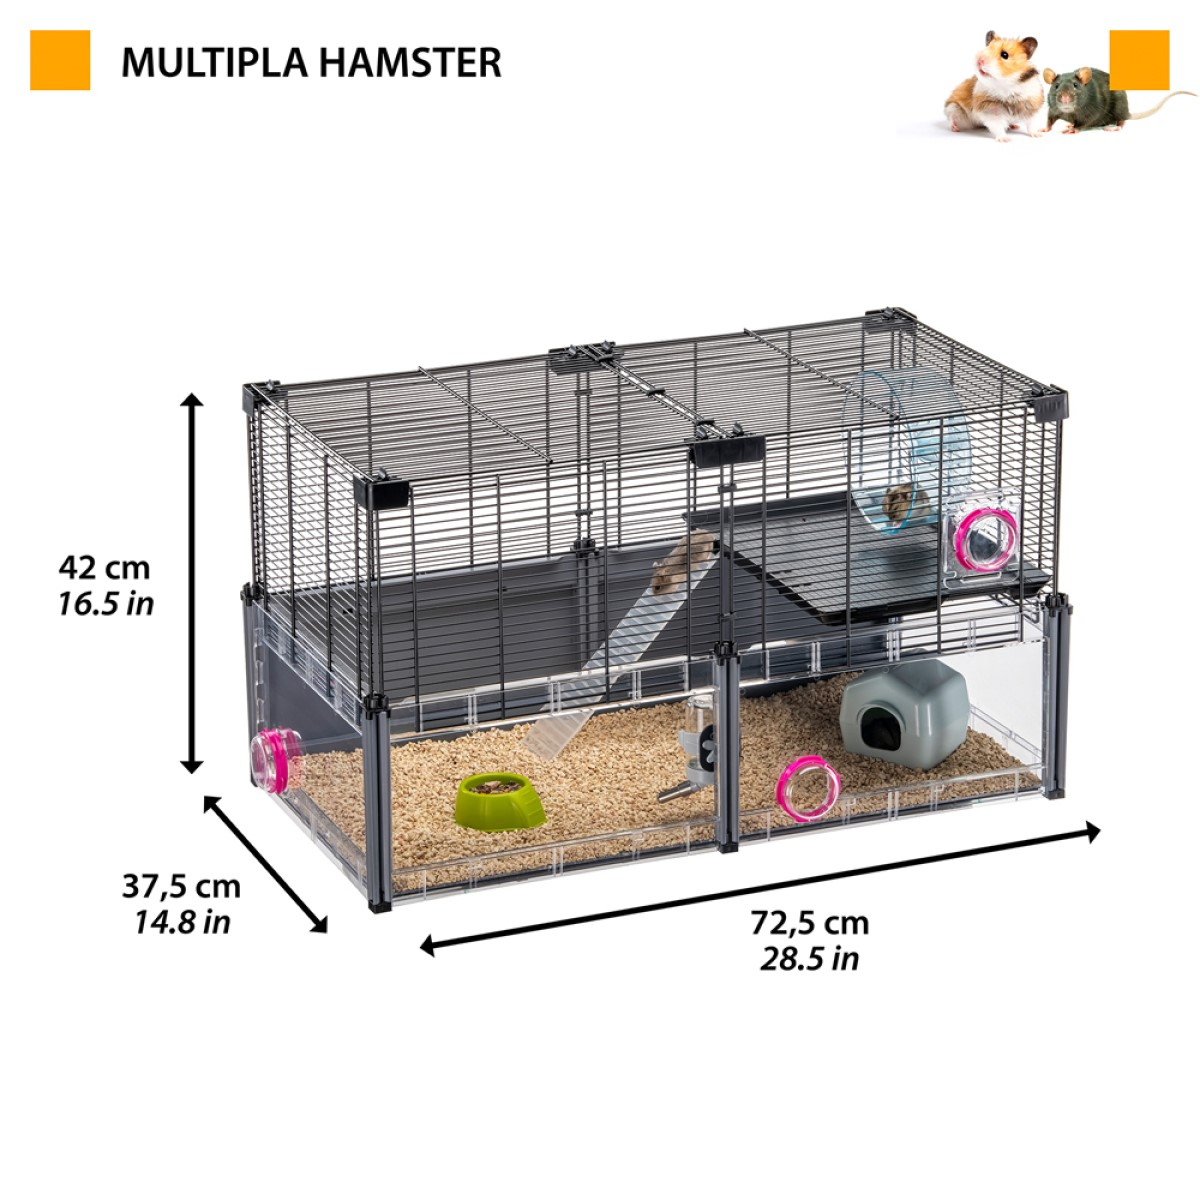 Gaiola para Hamster - H42 cm - Ferplast Multipla